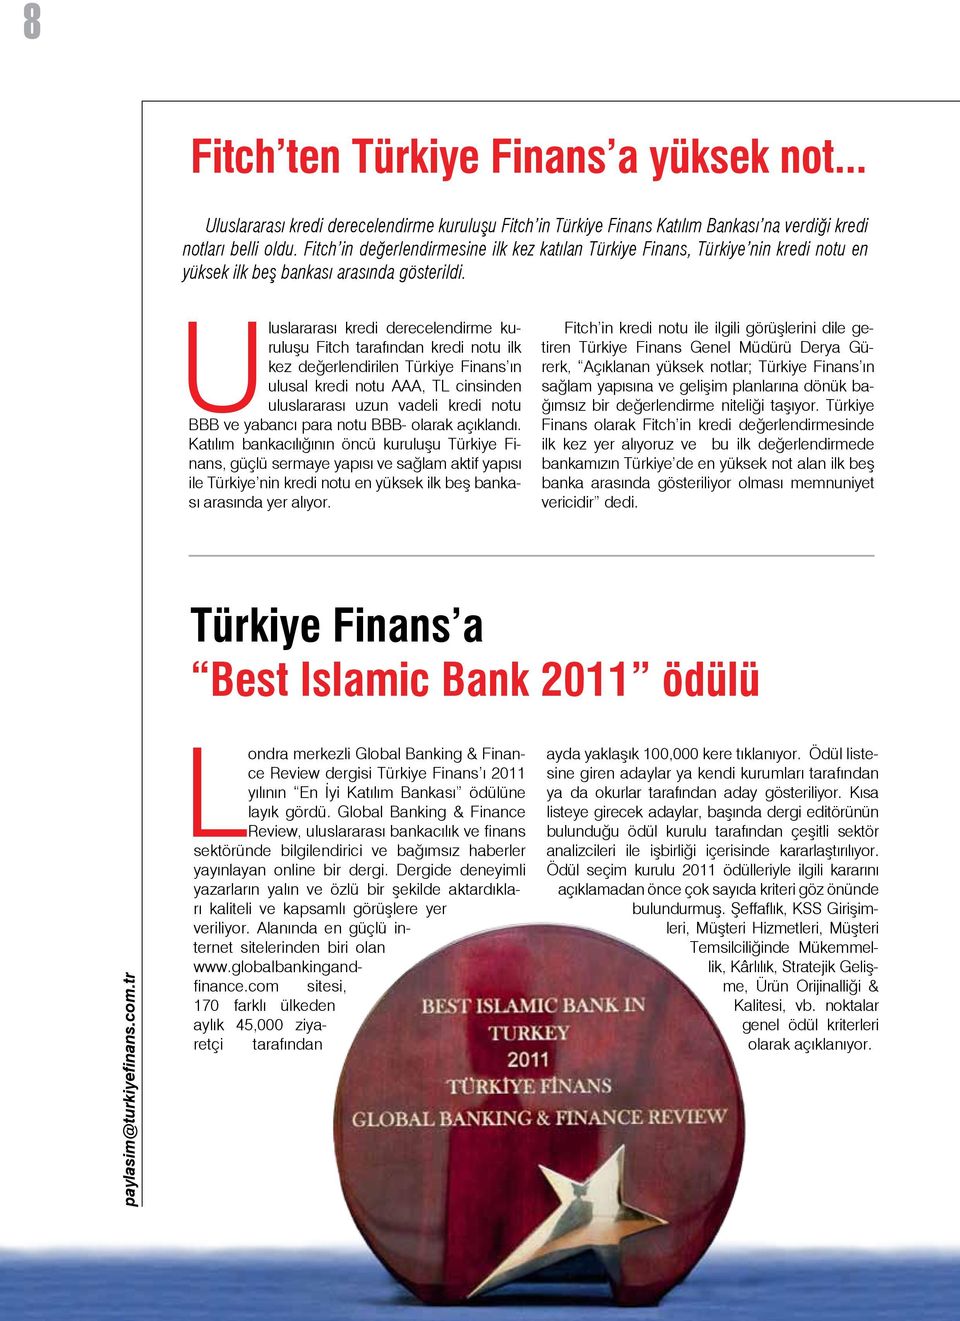 Uluslararası kredi derecelendirme kuruluşu Fitch tarafından kredi notu ilk kez değerlendirilen Türkiye Finans ın ulusal kredi notu AAA, TL cinsinden uluslararası uzun vadeli kredi notu BBB ve yabancı